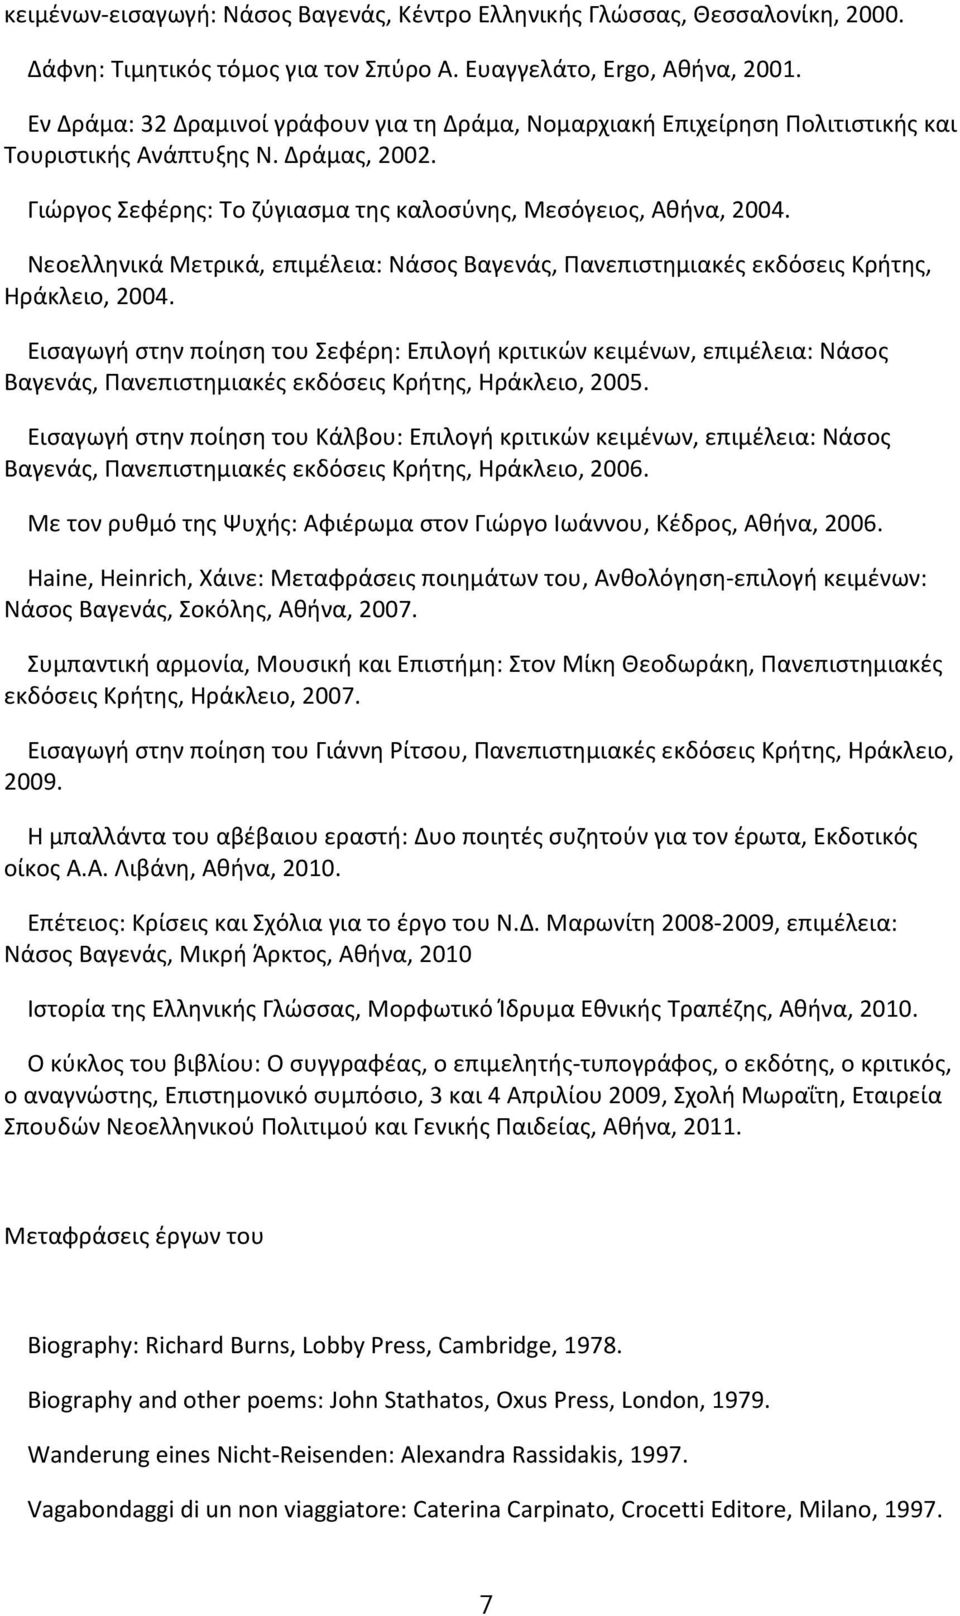 Νεοελληνικά Μετρικά, επιμέλεια: Νάσος Βαγενάς, Πανεπιστημιακές εκδόσεις Κρήτης, Ηράκλειο, 2004.